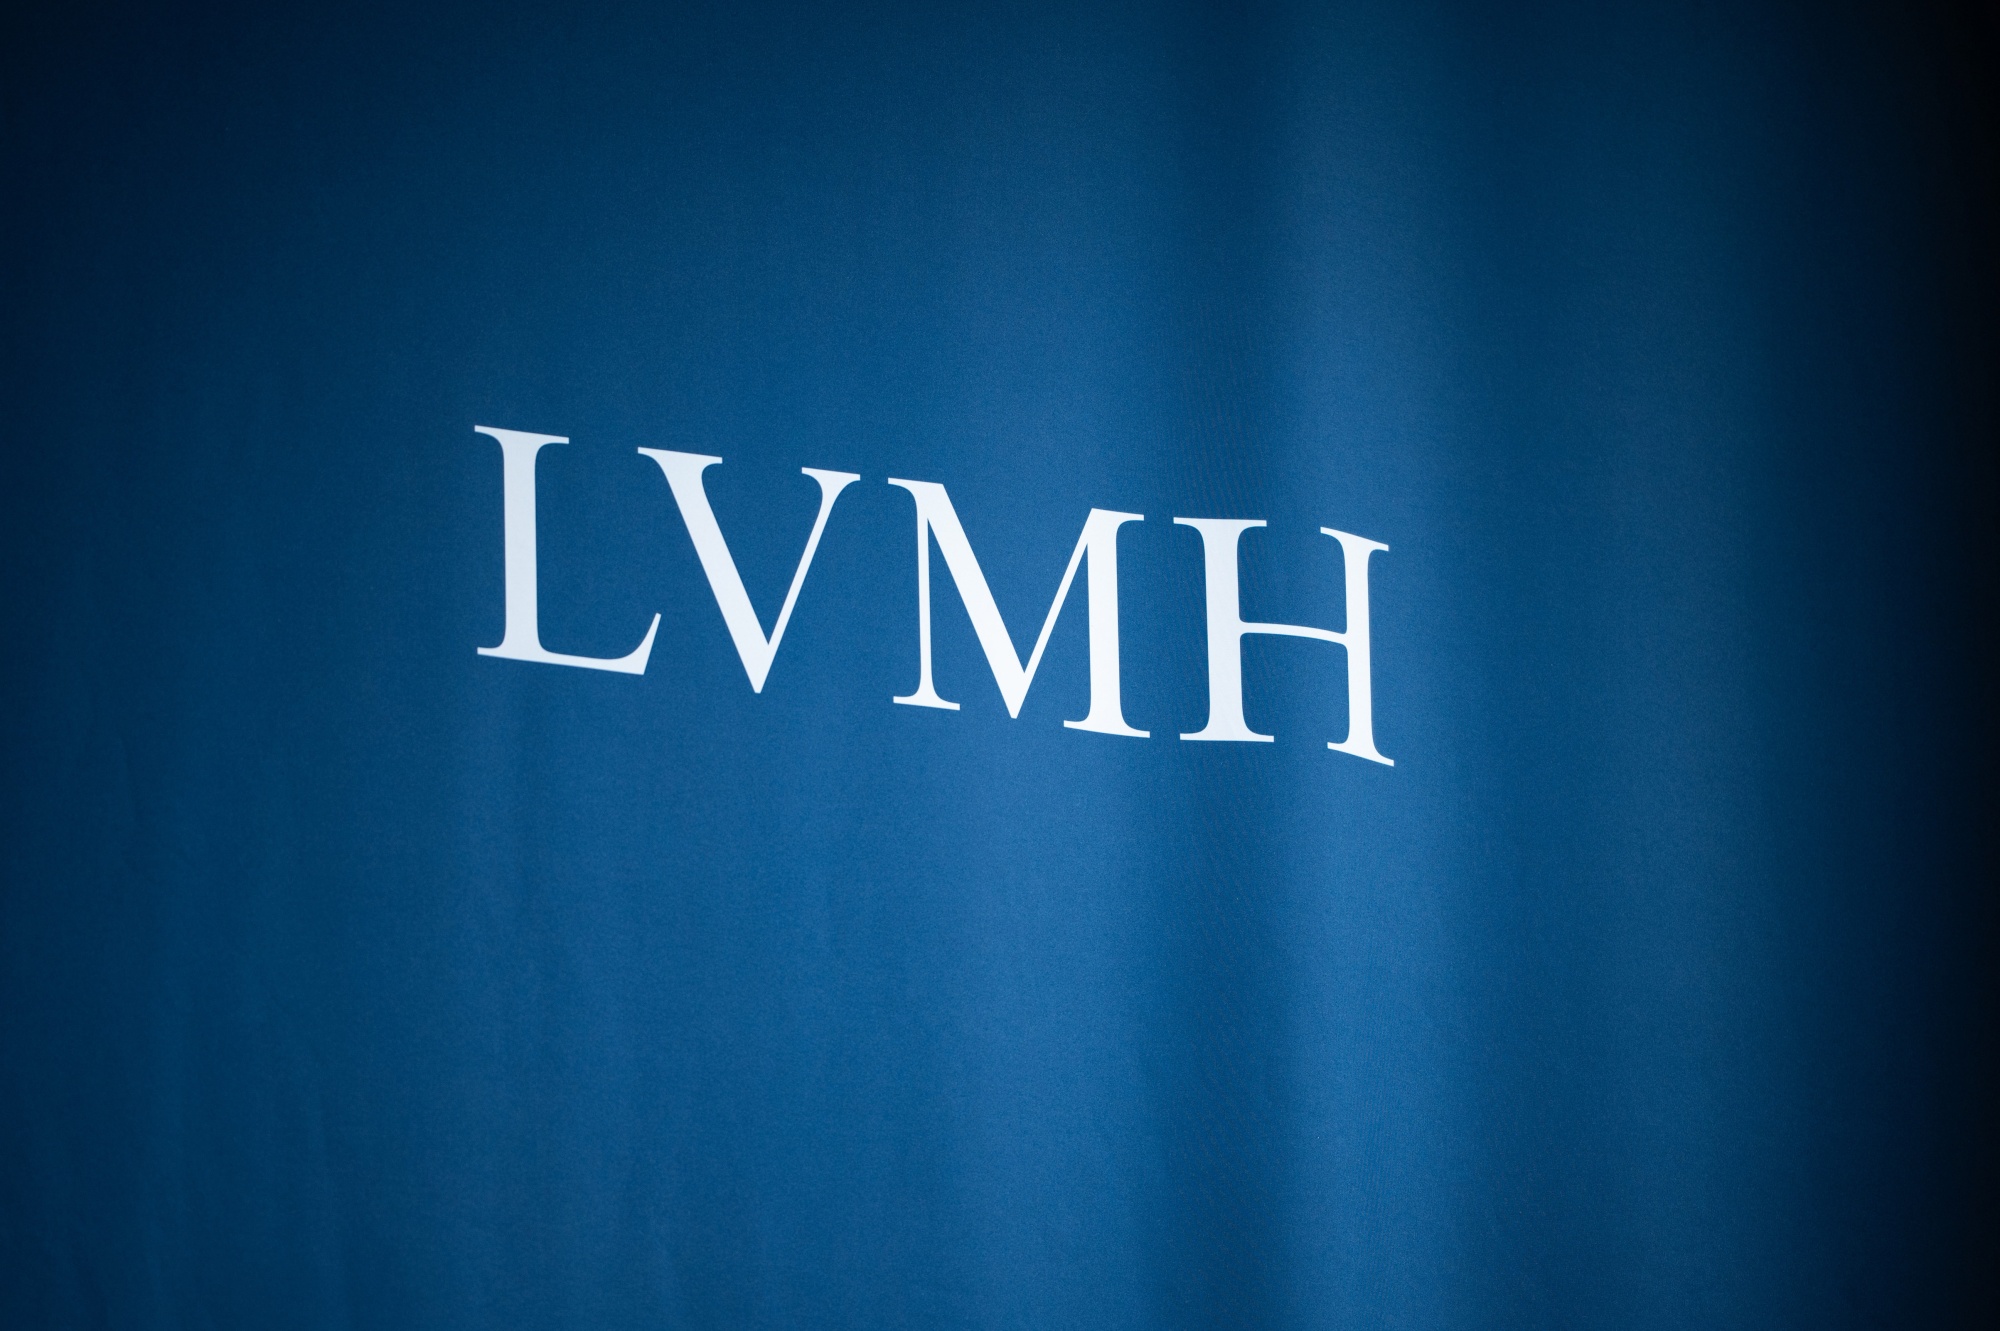 Empresas del grupo LVMH